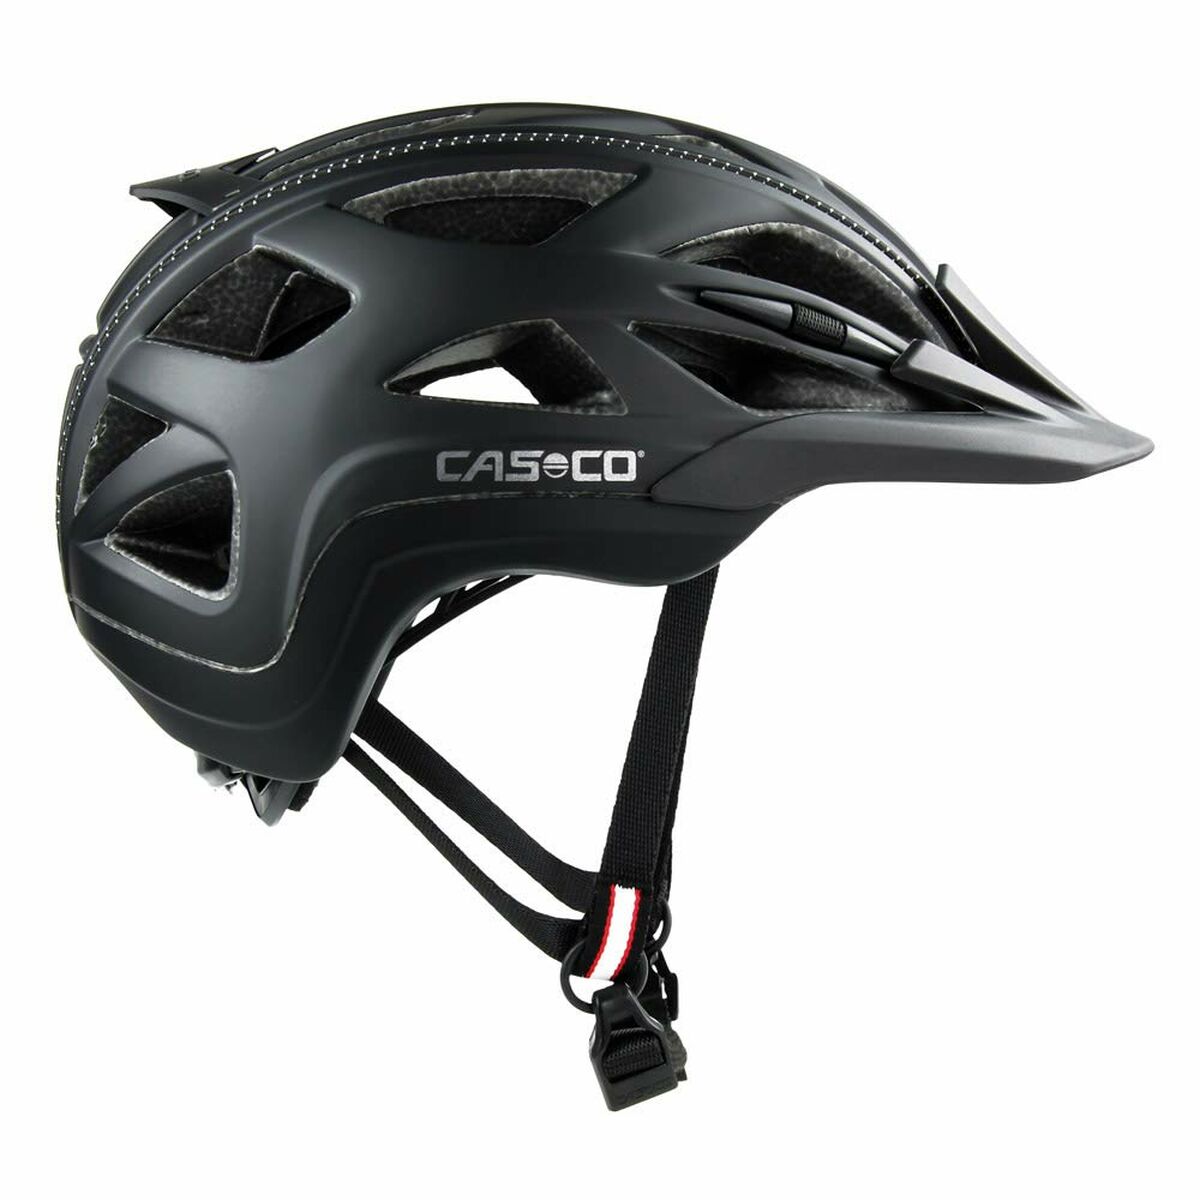 Adult's Cycling Helmet Casco ACTIV2 Matte back L 58-62 cm